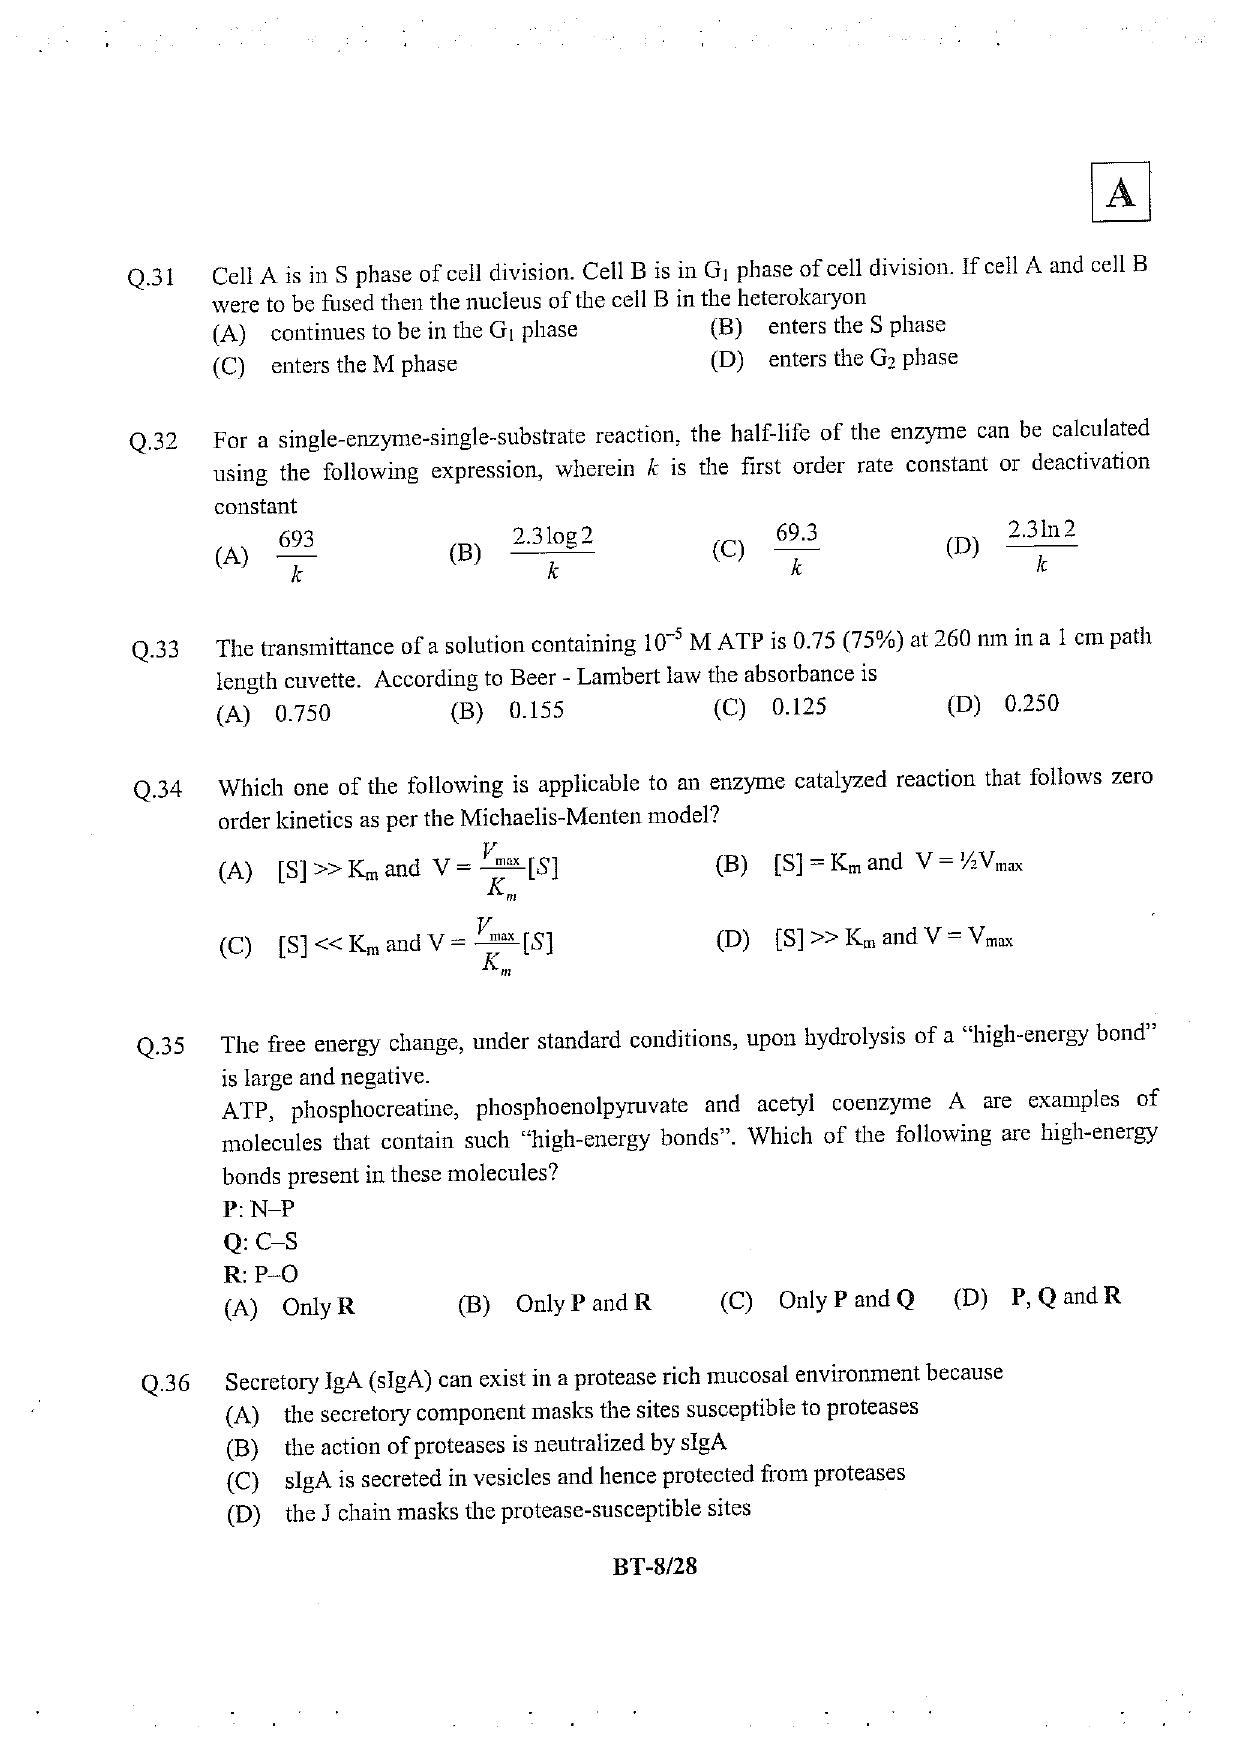 JAM 2013: BT Question Paper - Page 9